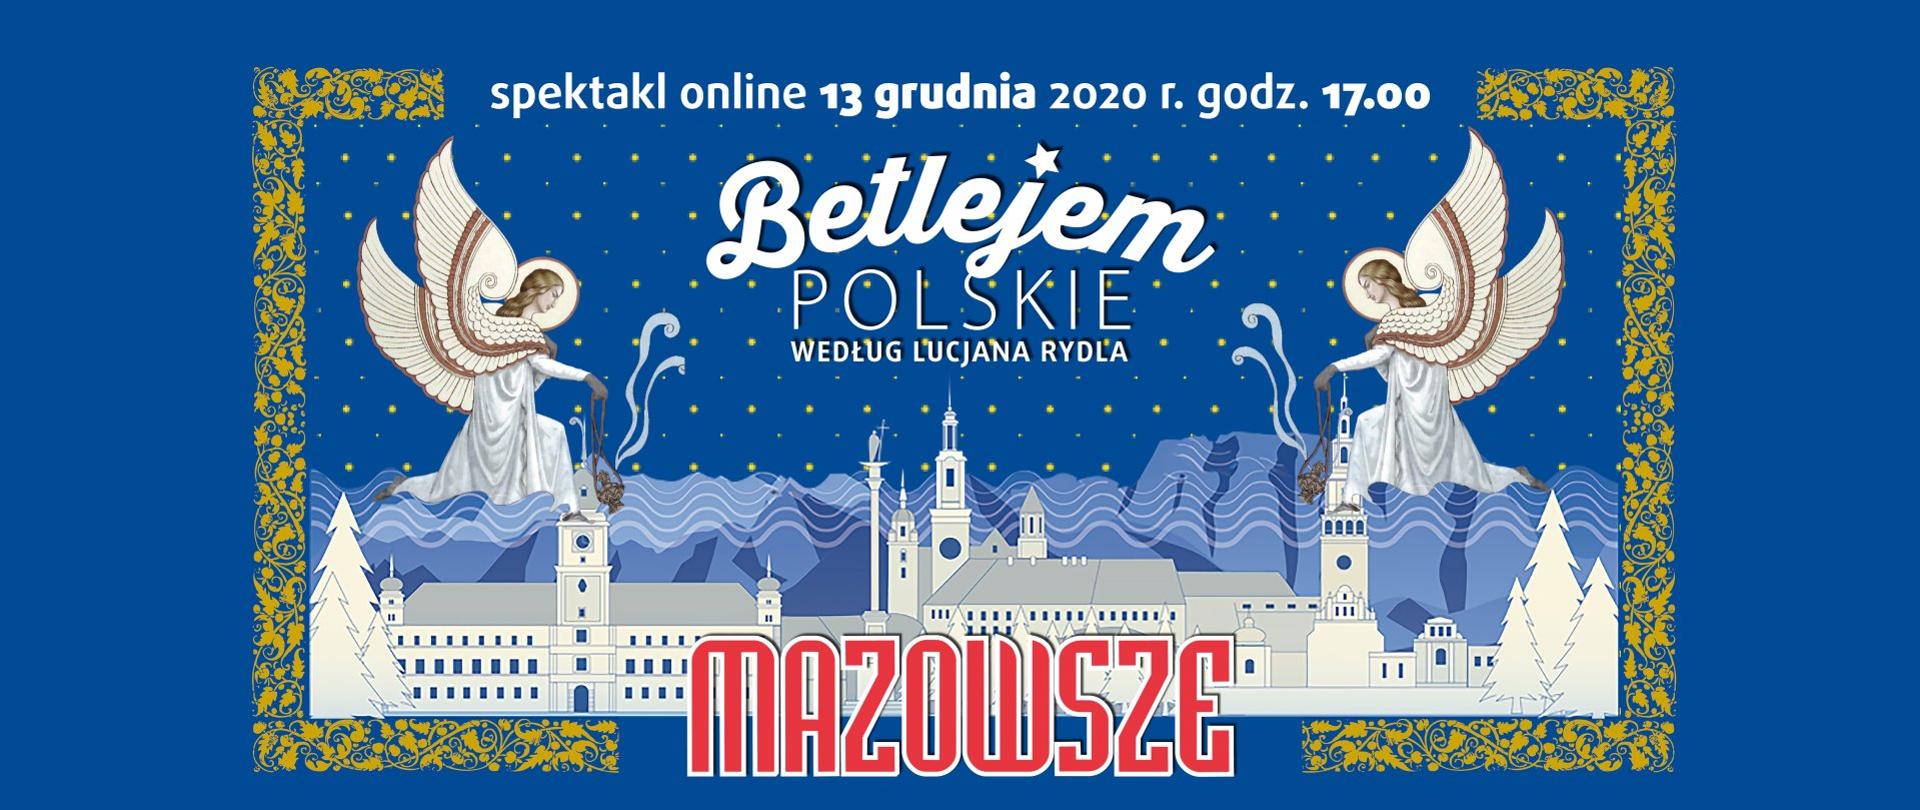 mazowsze2